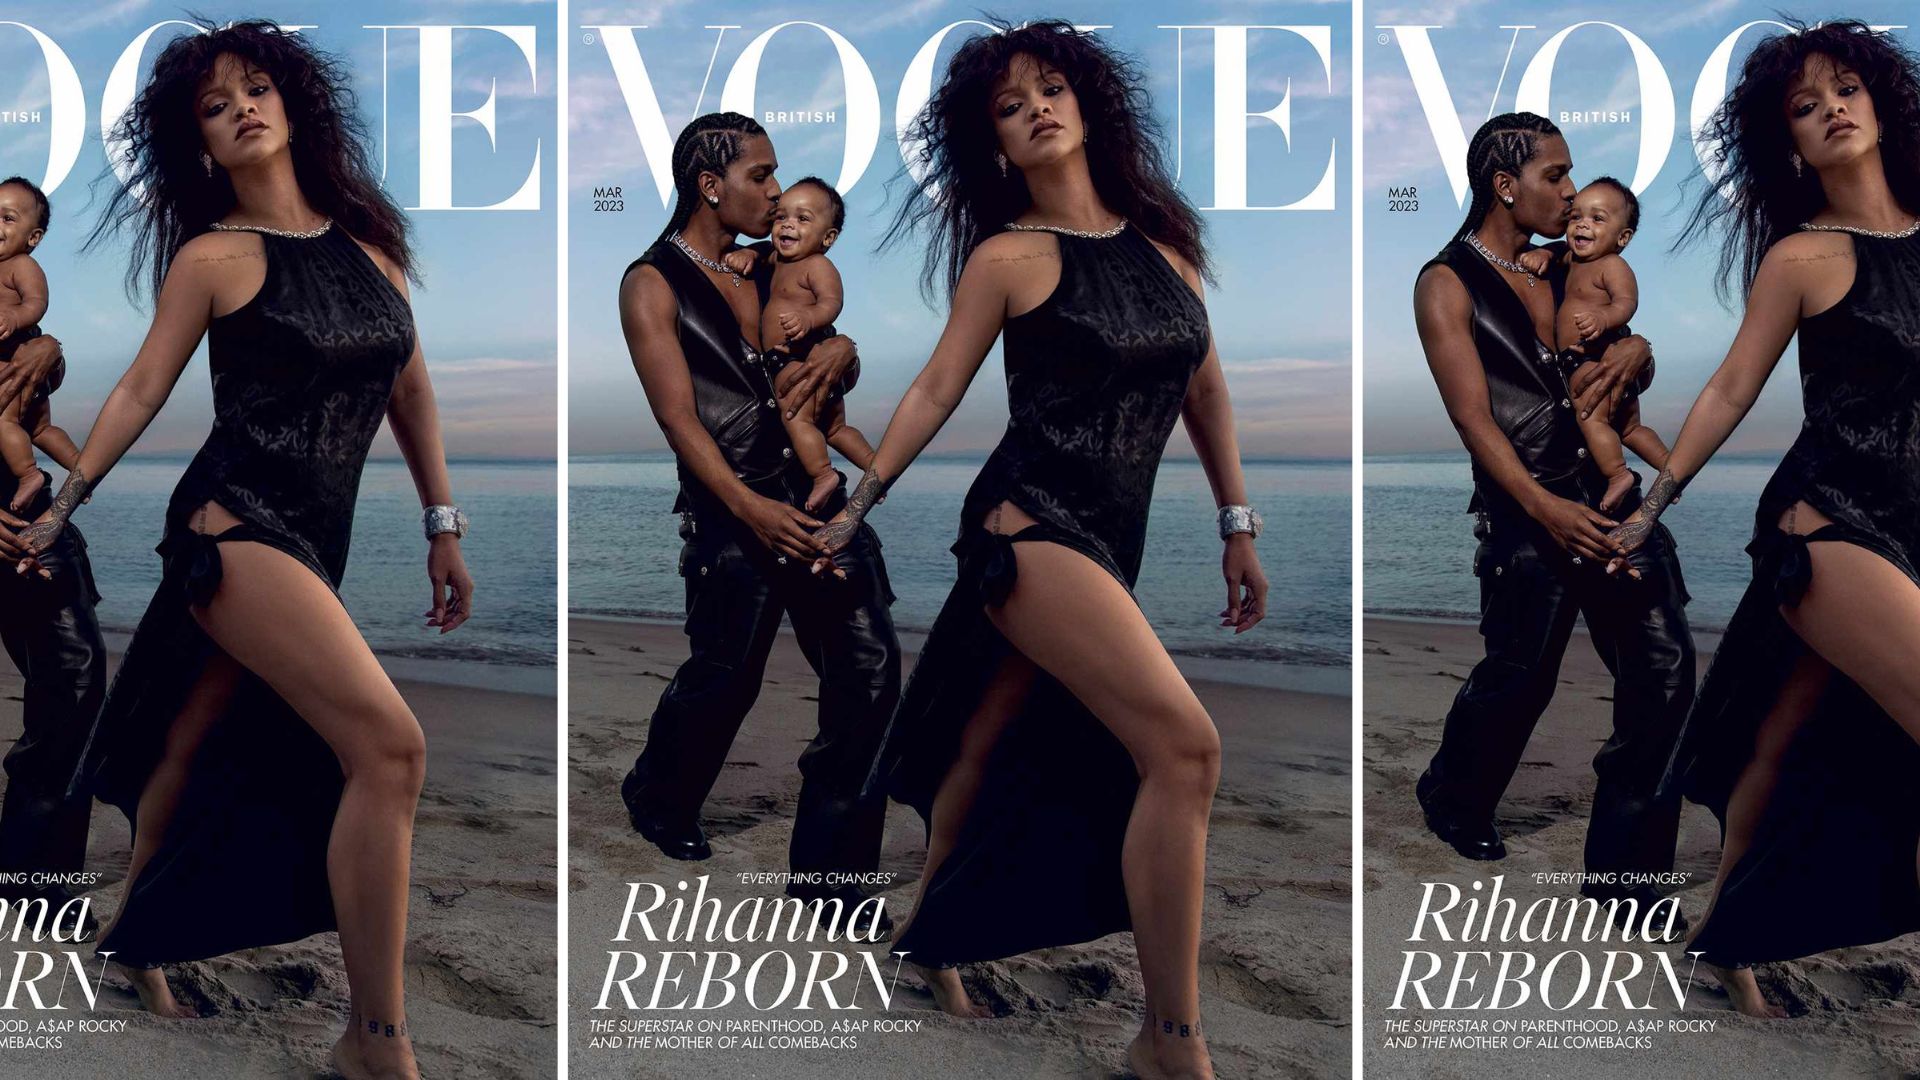 En couverture du British Vogue, Rihanna dézingue (à nouveau) les codes de la maternité